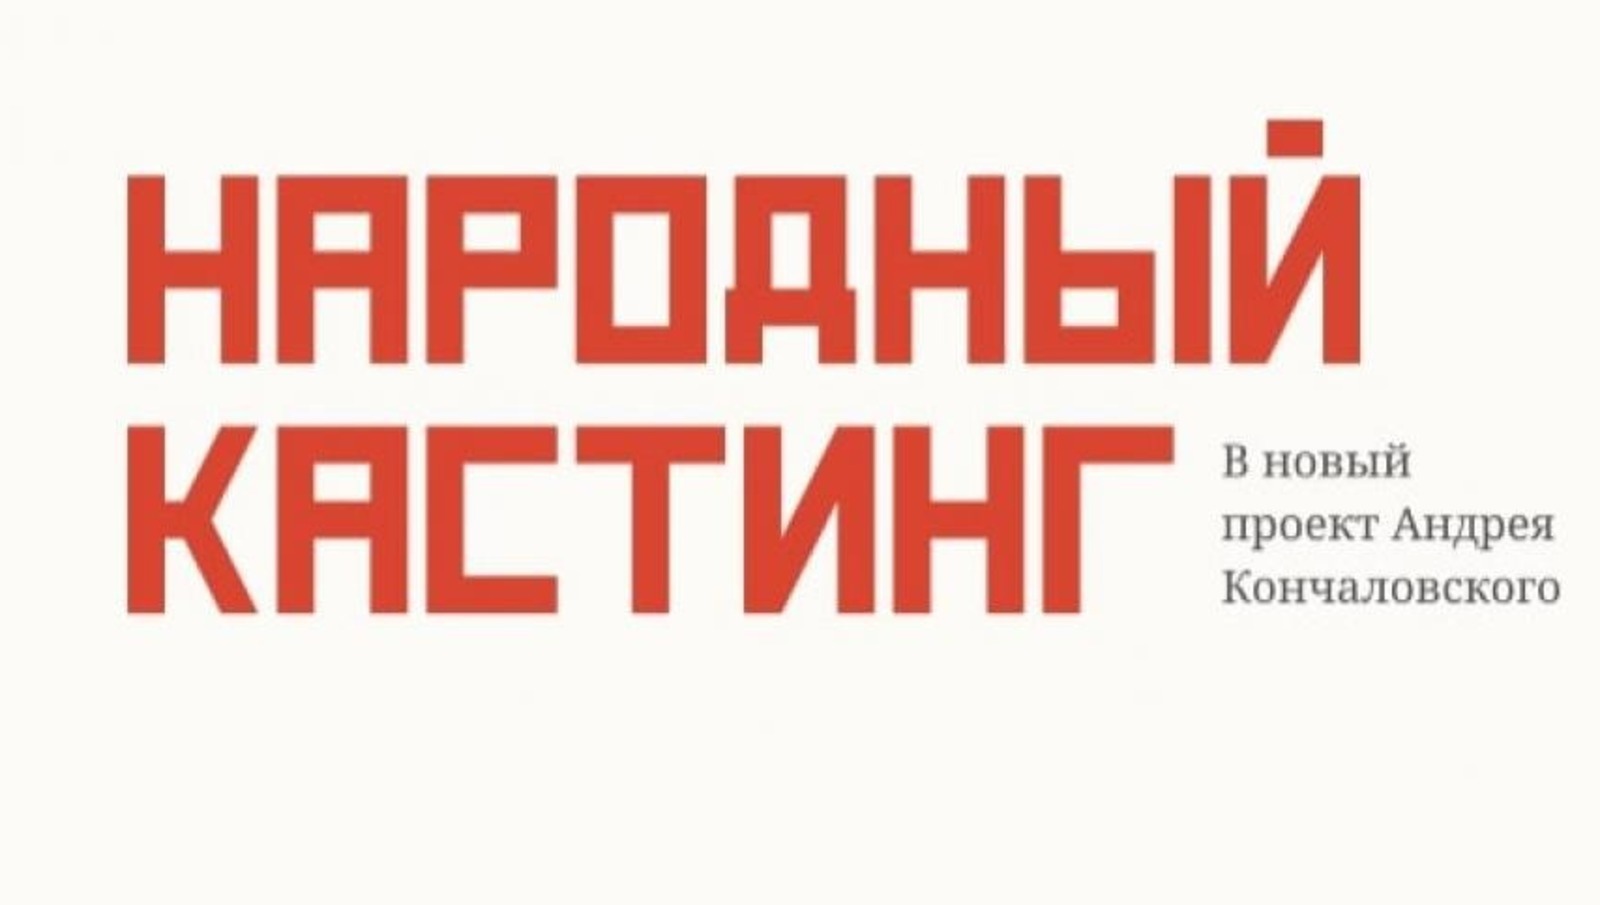 В Башкирии объявили народный	кастинг в сериал от Андрея Кончаловского